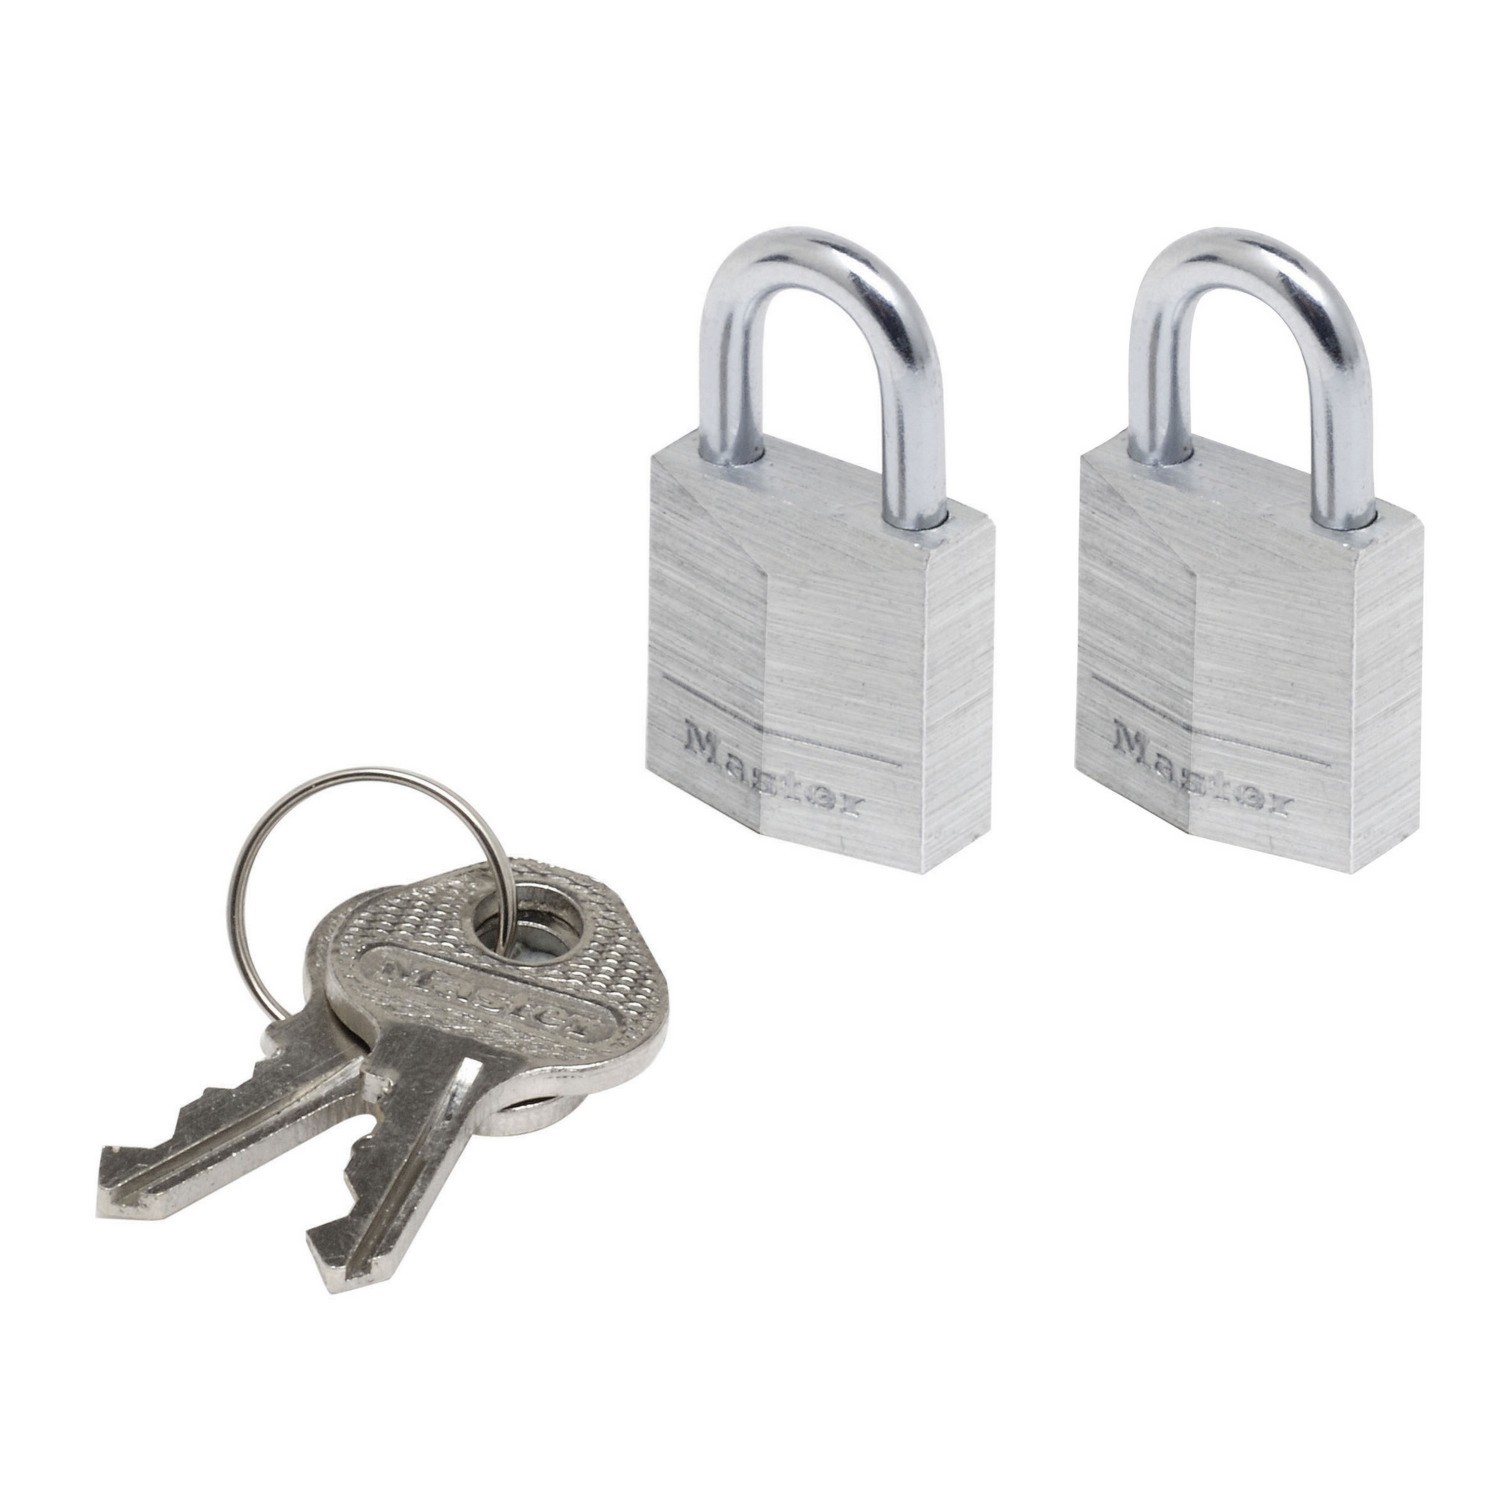 Master Lock Silver Aluminium Padlock 2 Pack Image